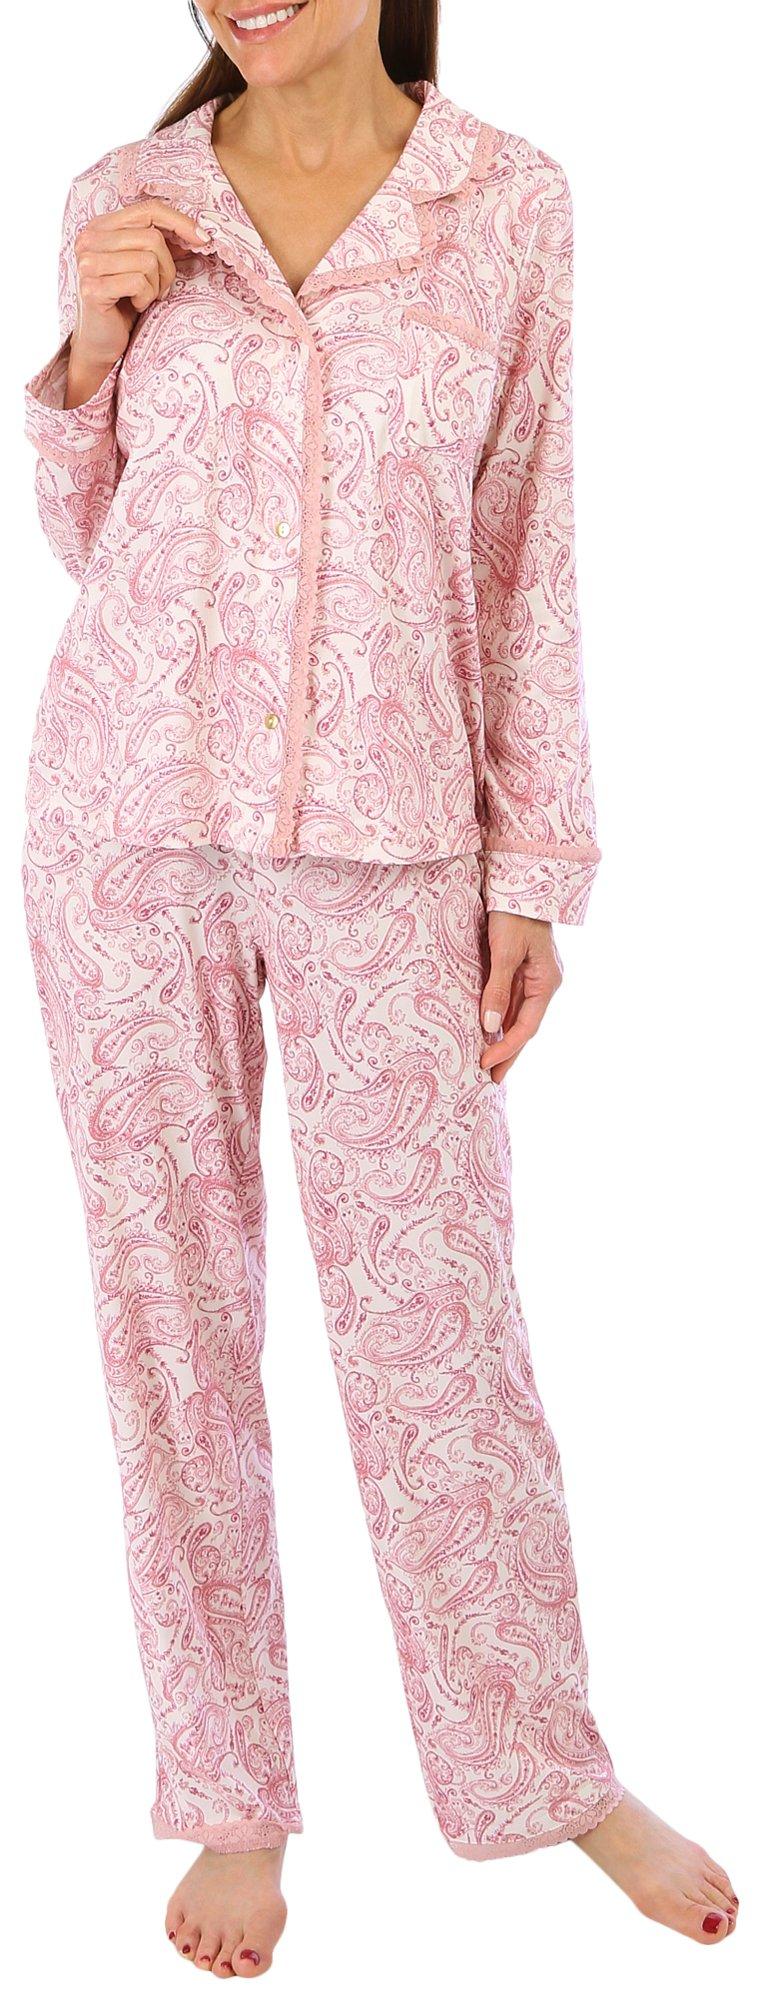 Jessica Simpson Womens 2-Pc. Paisley Pajama Set